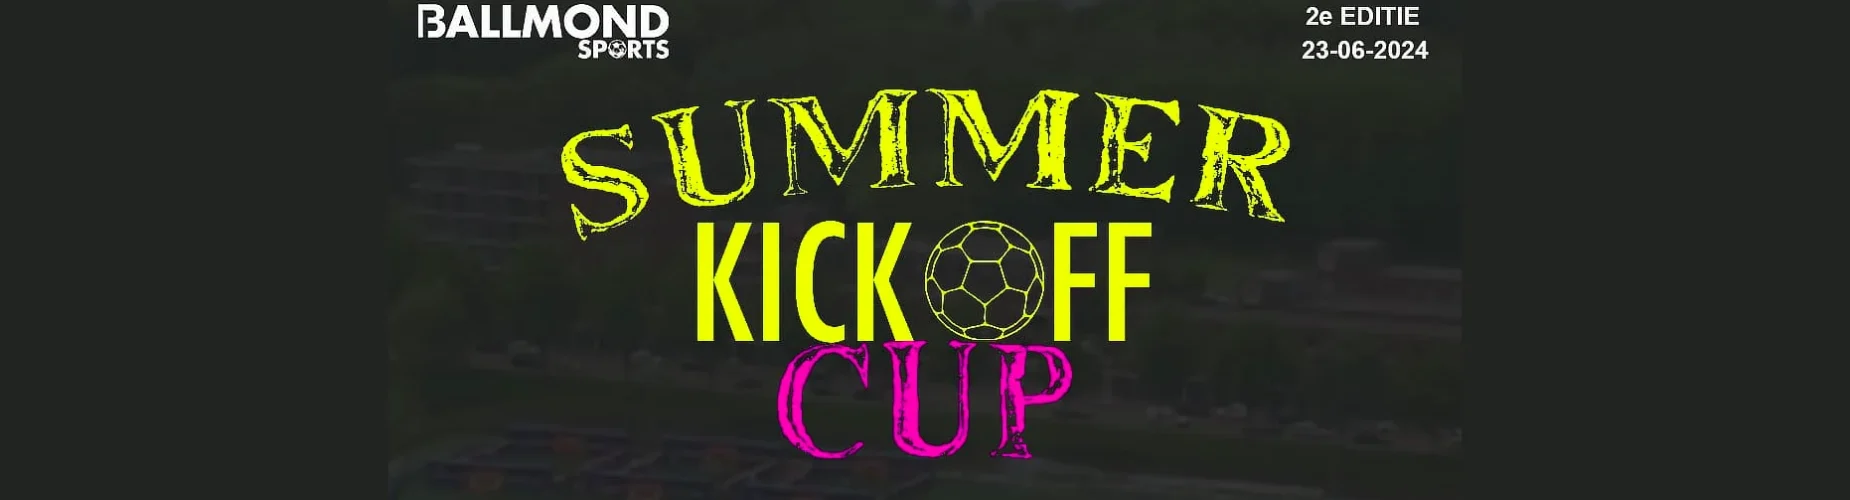 Banner - Summer Kick Off Cup 2024 - Ballmond Sports Academy - Hoogvliet Rotterdam